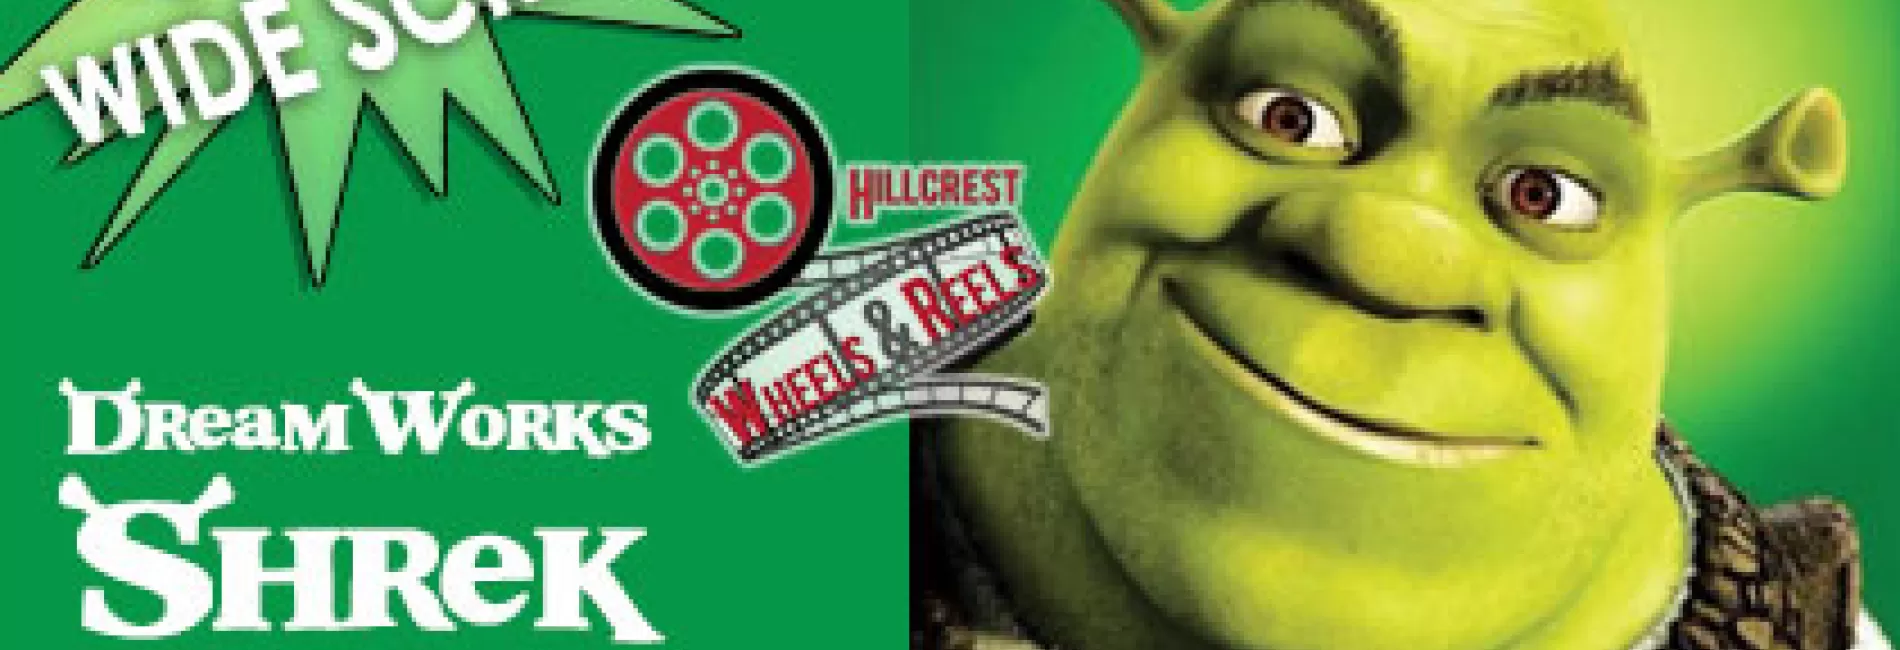 CANCELED: DreamWorks' Shrek: Wheels and Reels Film Screening